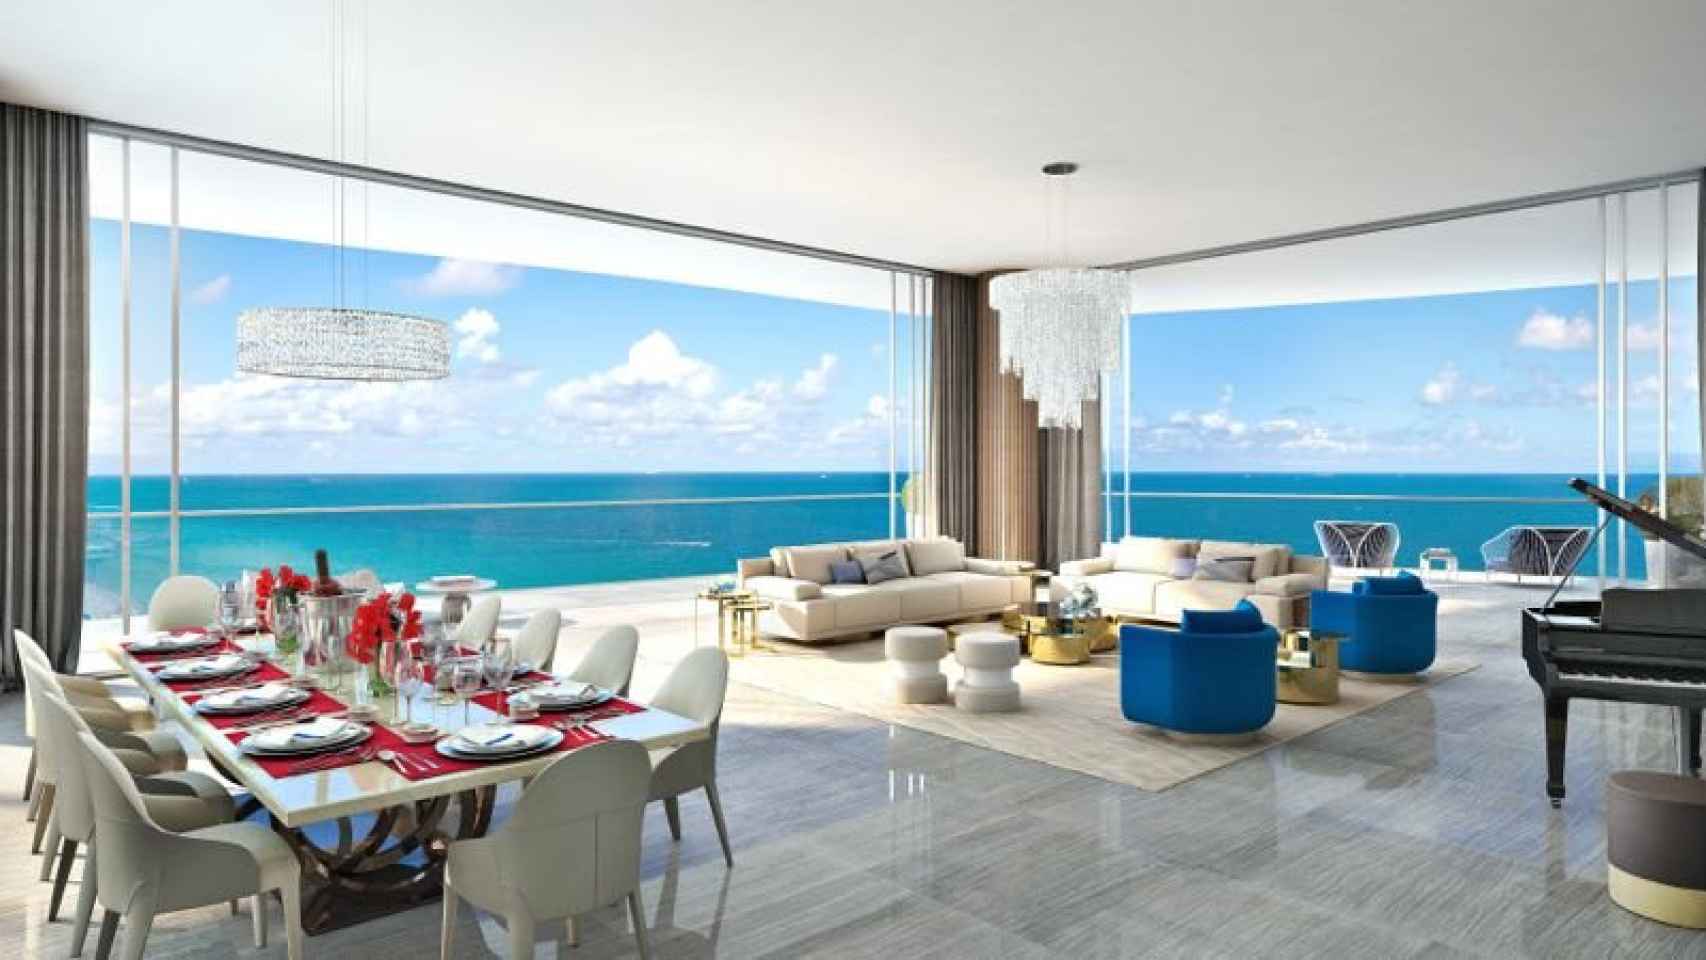 Imagen de cómo será la sala de estar de una de las residencias de lujo de Acqualina.